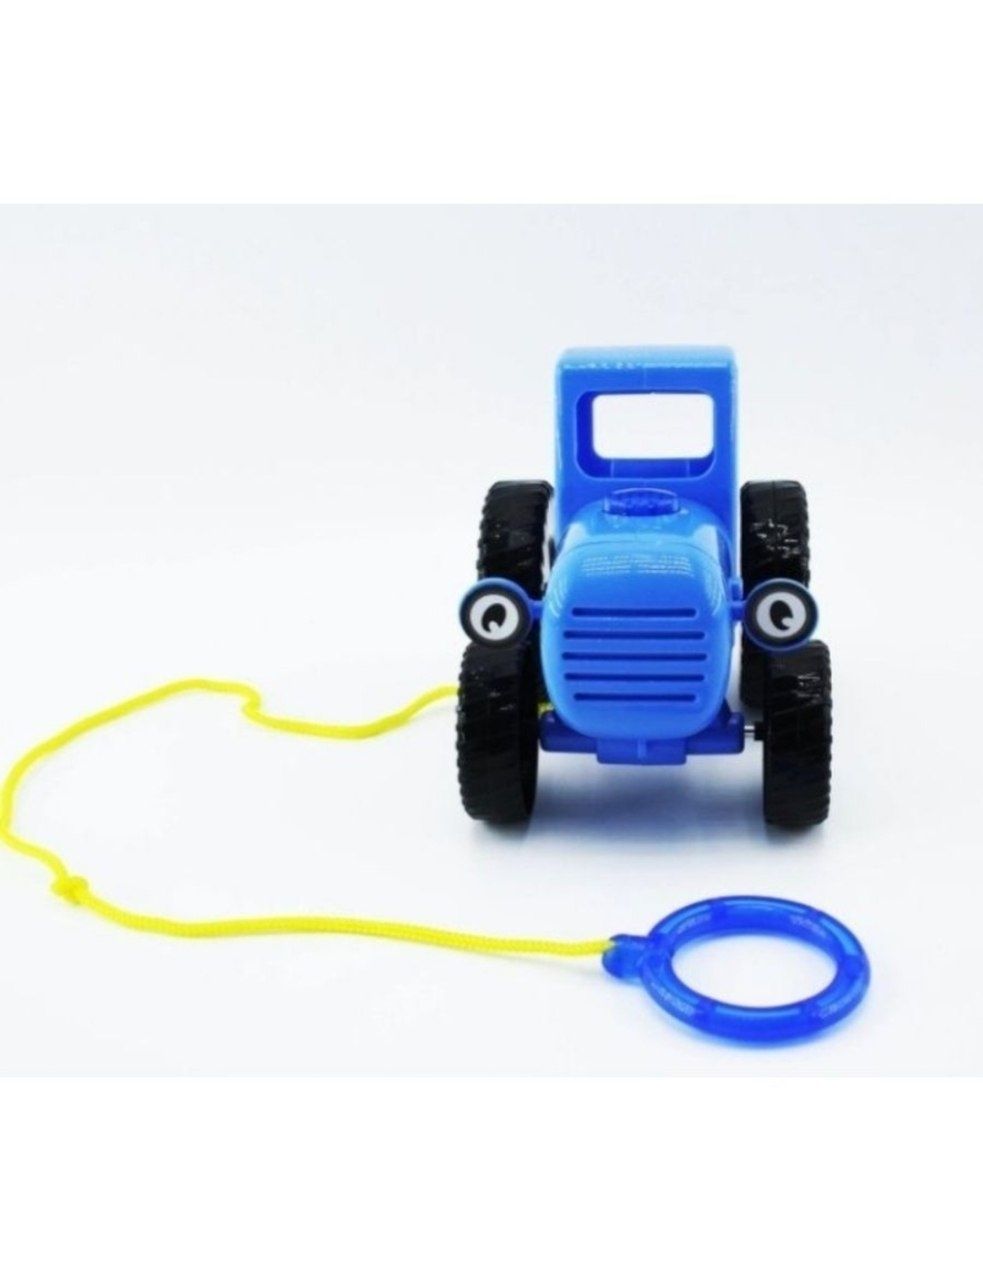 Синий трактор музыкальный/игрушка